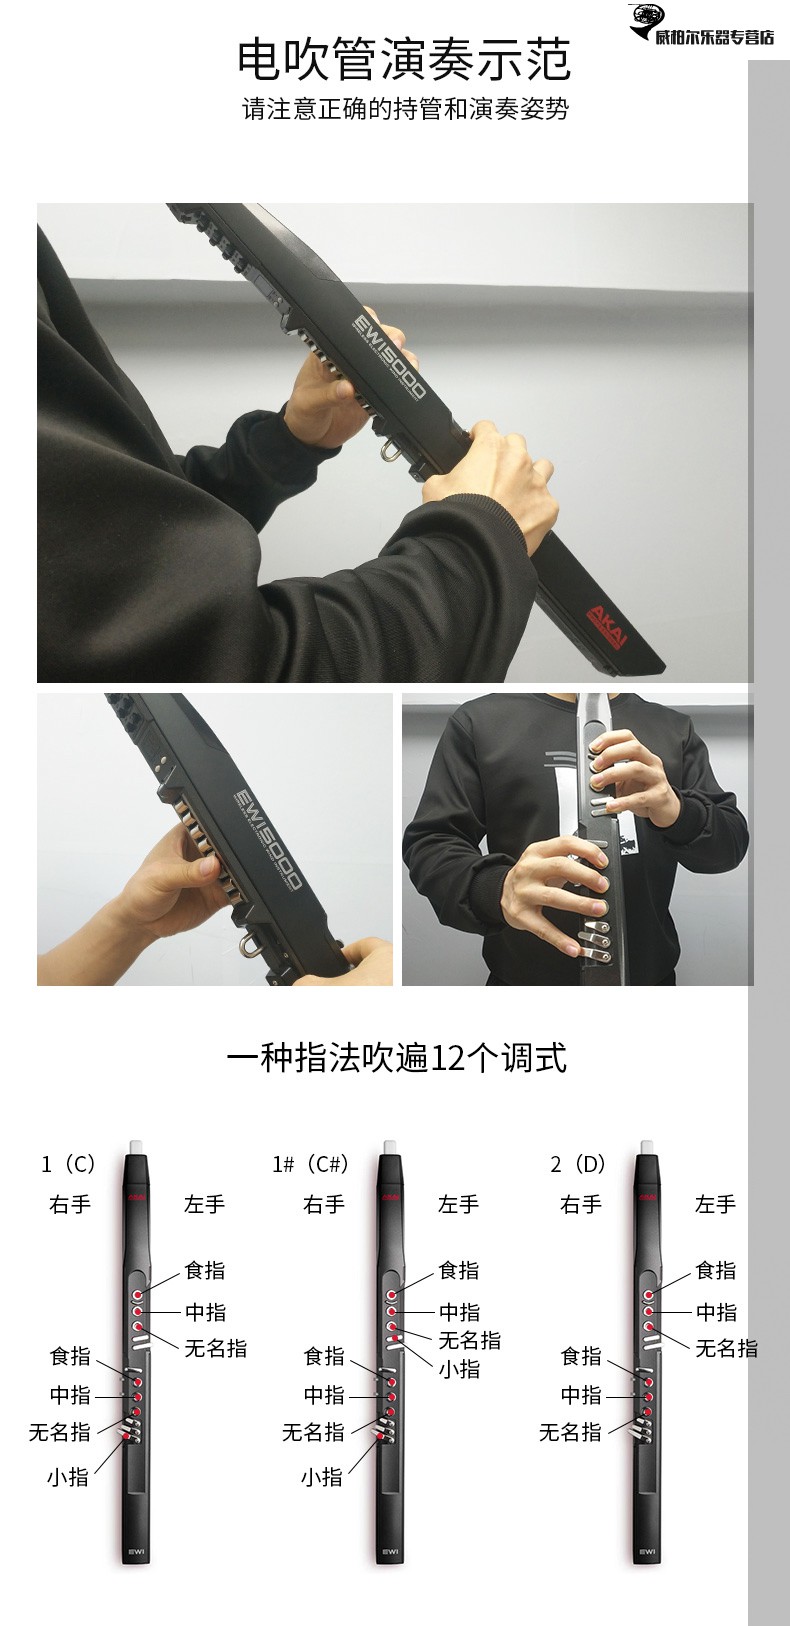 全新雅佳5000akai5000雅佳电吹管电萨克斯带教学笛子葫芦丝可上手